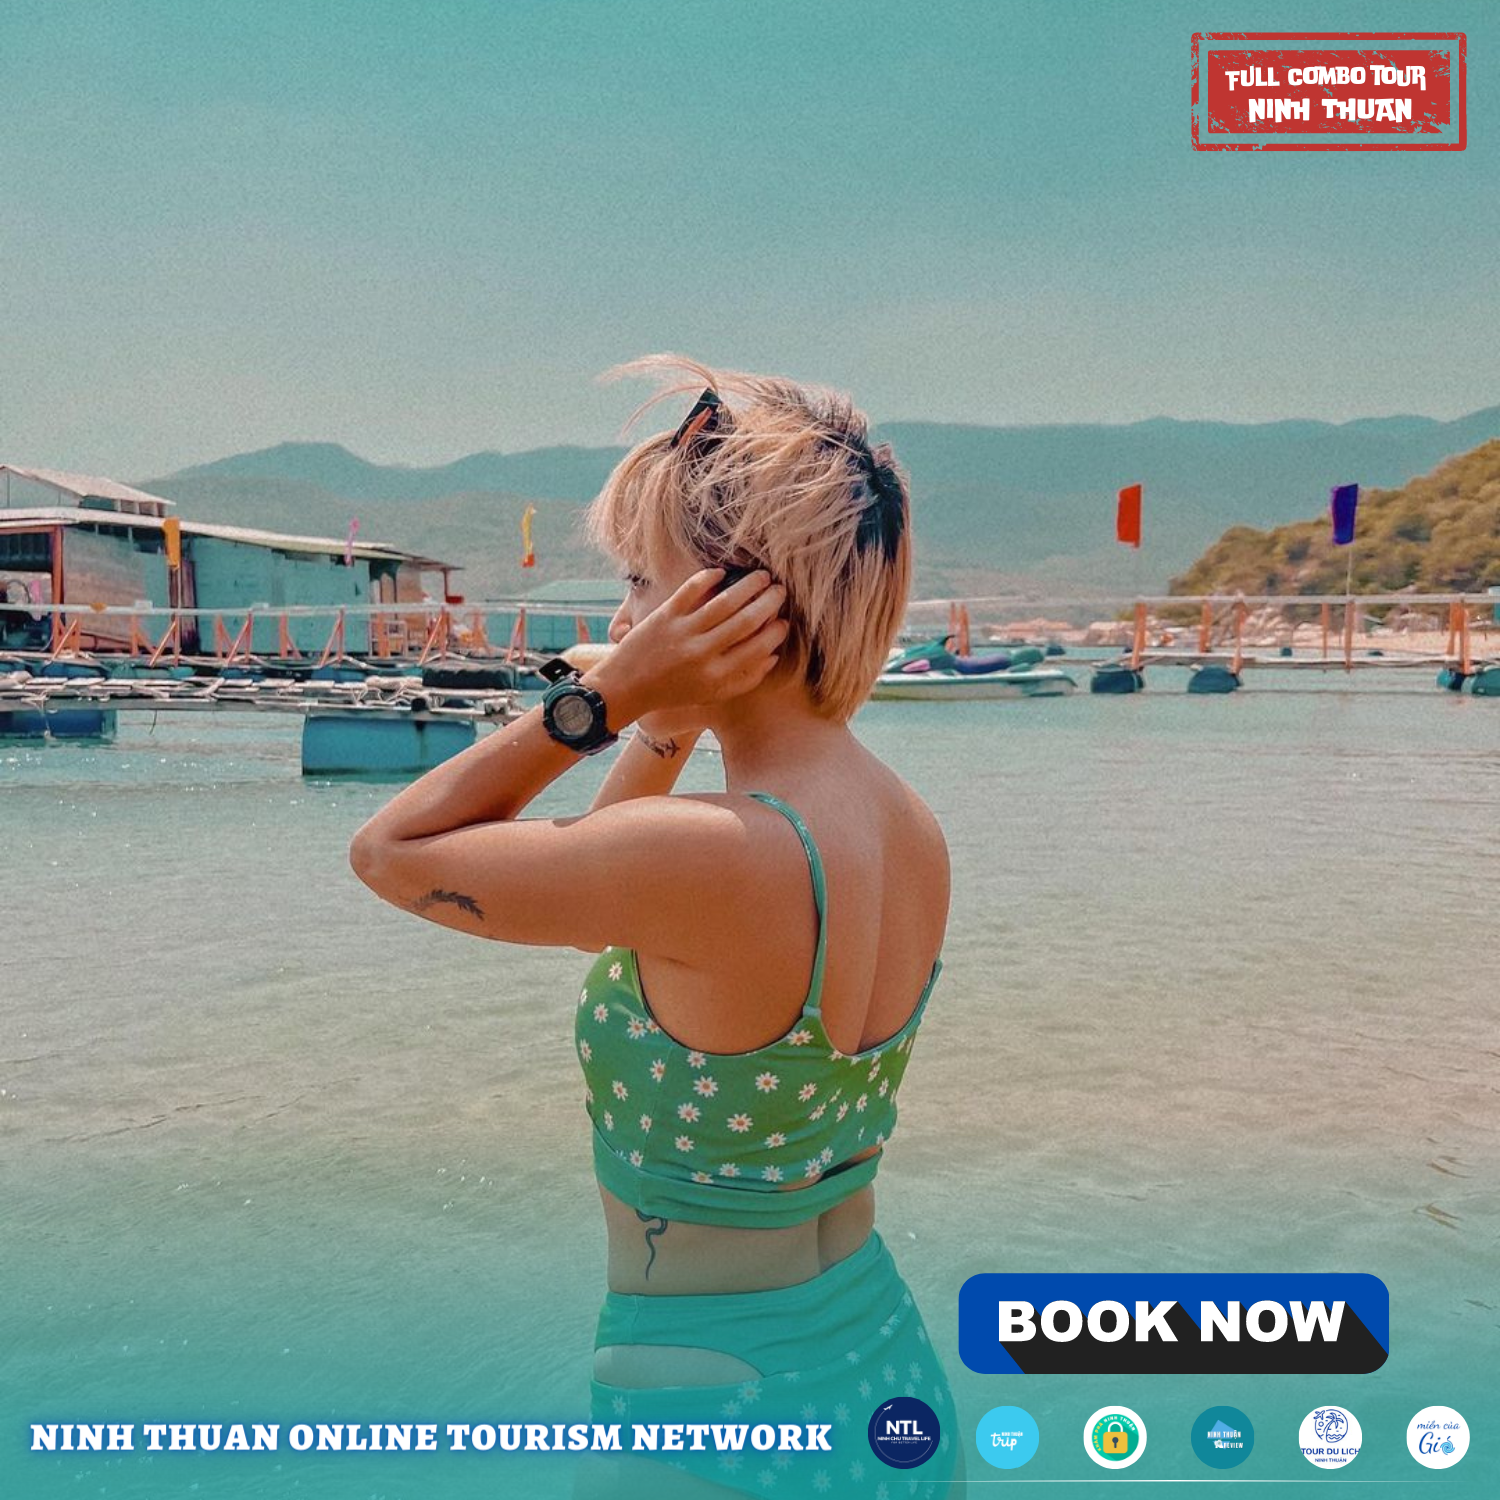 Mùa hè từ tháng 5 đến tháng 8 là thời điểm lý tưởng để bạn thực hiện chuyến du lịch đến Ninh Thuận. Ảnh: AD